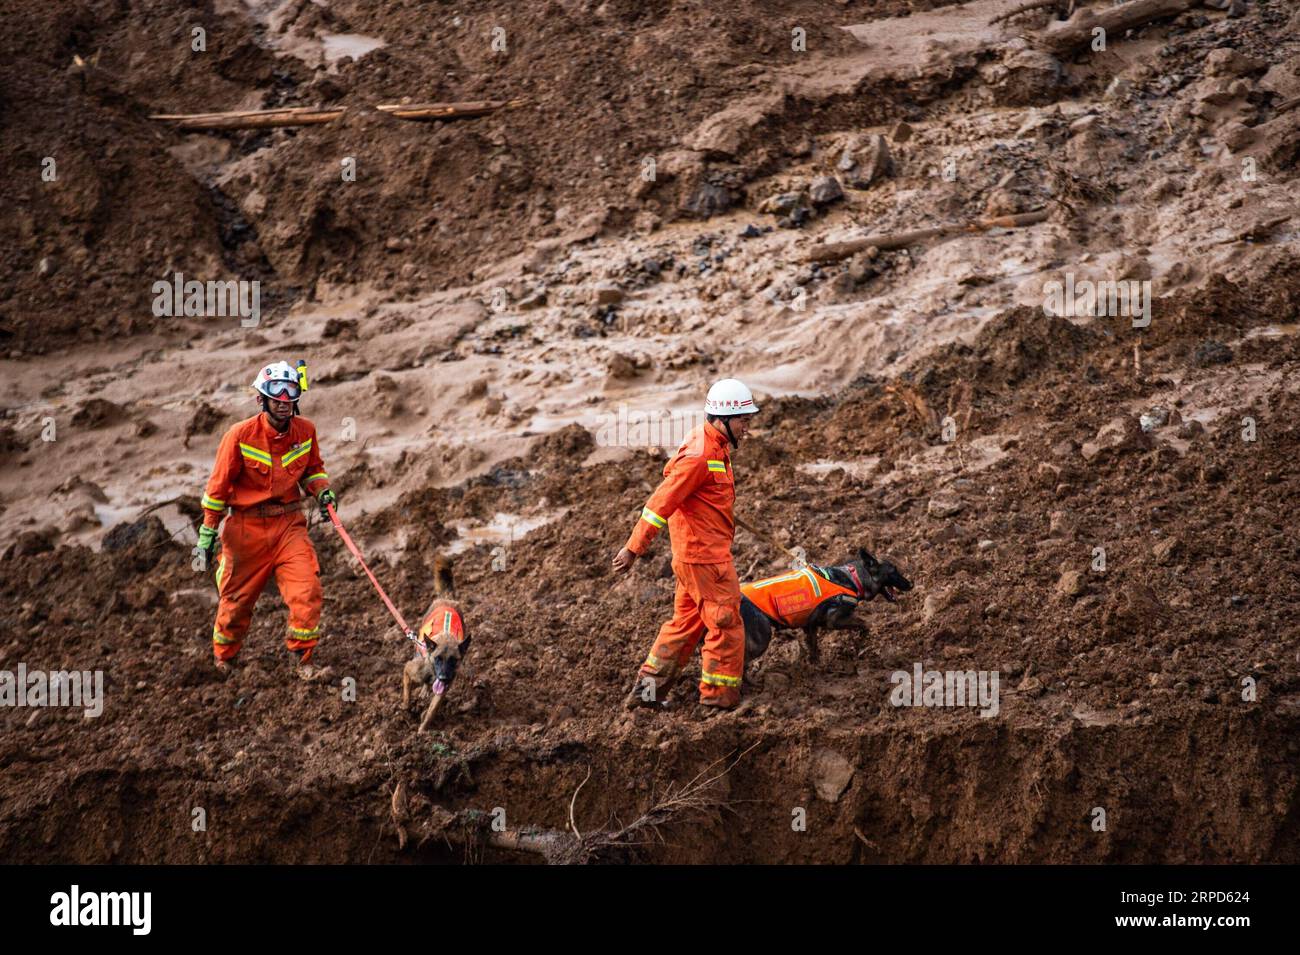 (190724) -- SHUICHENG, 24 juillet 2019 -- des sauveteurs et des chiens de sauvetage recherchent des survivants sur un site de glissement de terrain au village de Pingdi dans le comté de Shuicheng de la ville de Liupanshui, dans le sud-ouest de la Chine, province du Guizhou, 24 juillet 2019. Onze personnes sont mortes après un glissement de terrain qui a frappé le village de Pingdi mardi soir, ont déclaré mercredi les autorités locales. Vers 9:20 h (1320 h GMT) mardi, un glissement de terrain a frappé le village, enterrant 21 maisons. Plus de 50 personnes vivaient dans la zone touchée lorsque le glissement de terrain a frappé, selon les sauveteurs. Vers 11 h (0300 h GMT) mercredi, 11 personnes ont été retrouvées mortes, 11 autres Banque D'Images